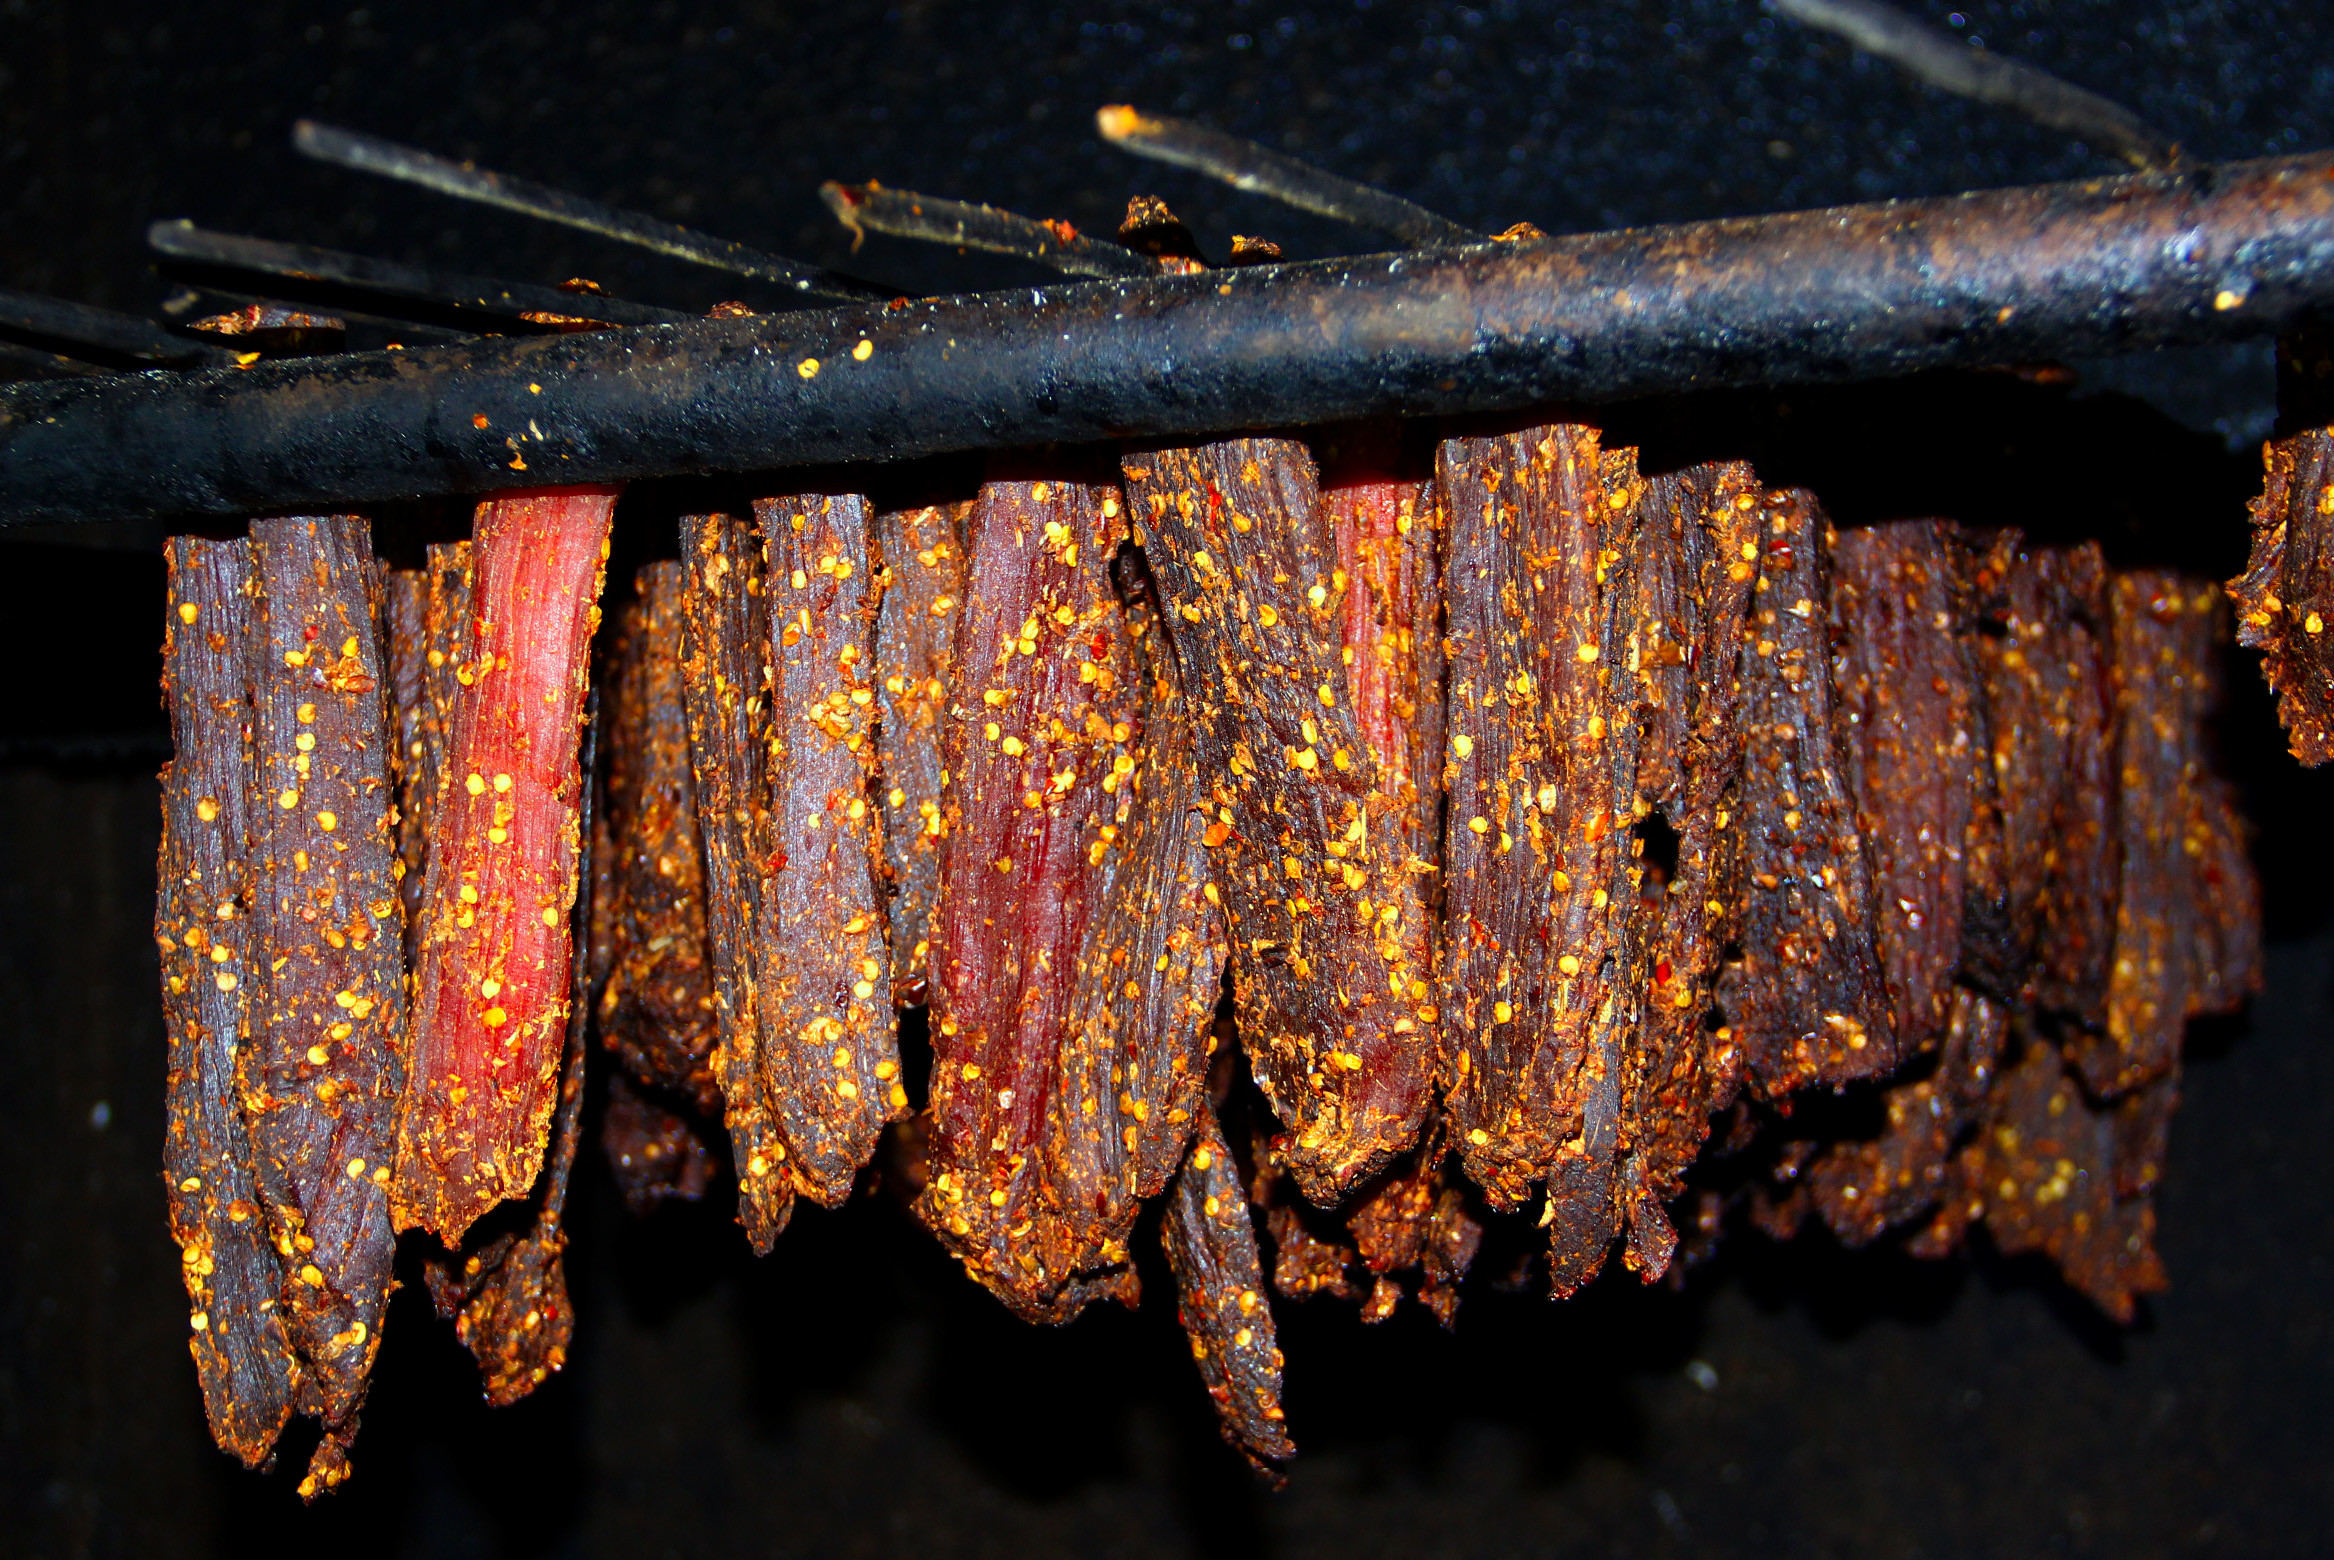 bna_Thịt bò giàng được gác trên bếp lửa dài ngày ảnh Quang An.jpg